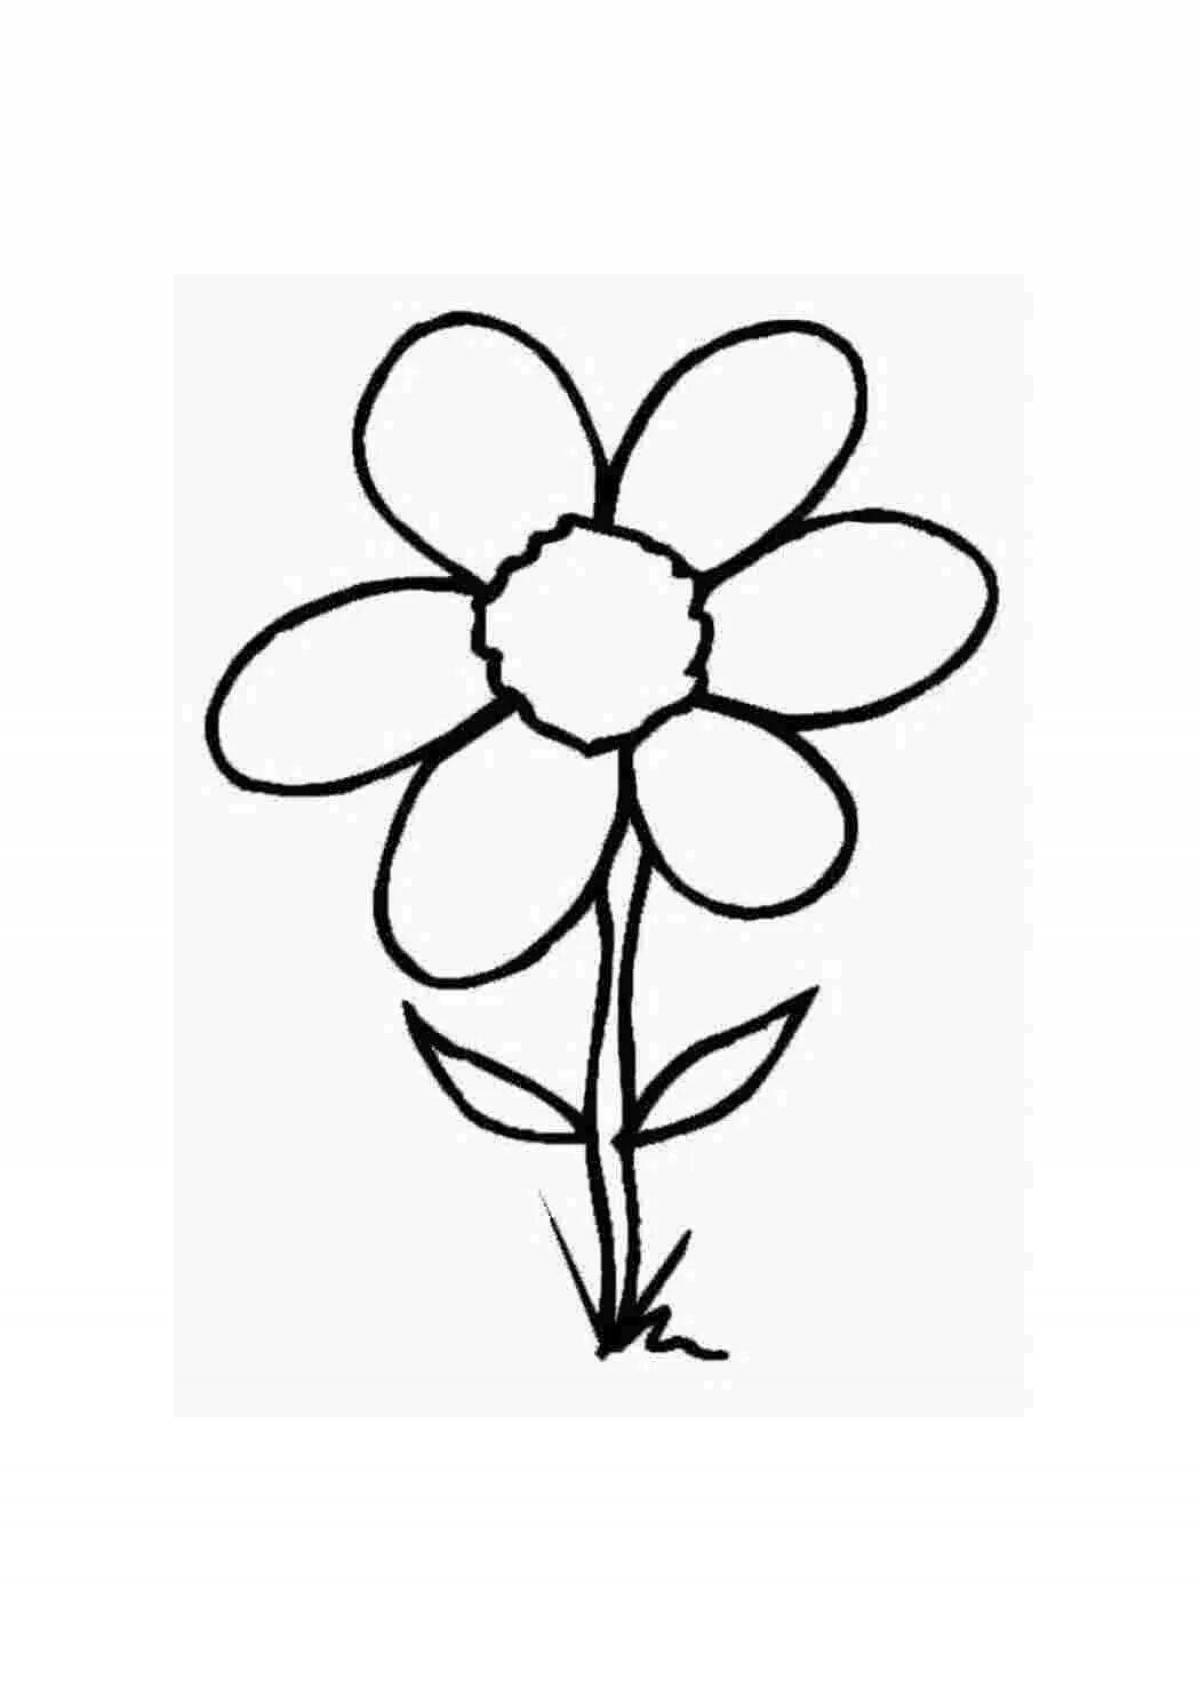 Увлекательная раскраска цветок семицветик для детей 3-4 лет